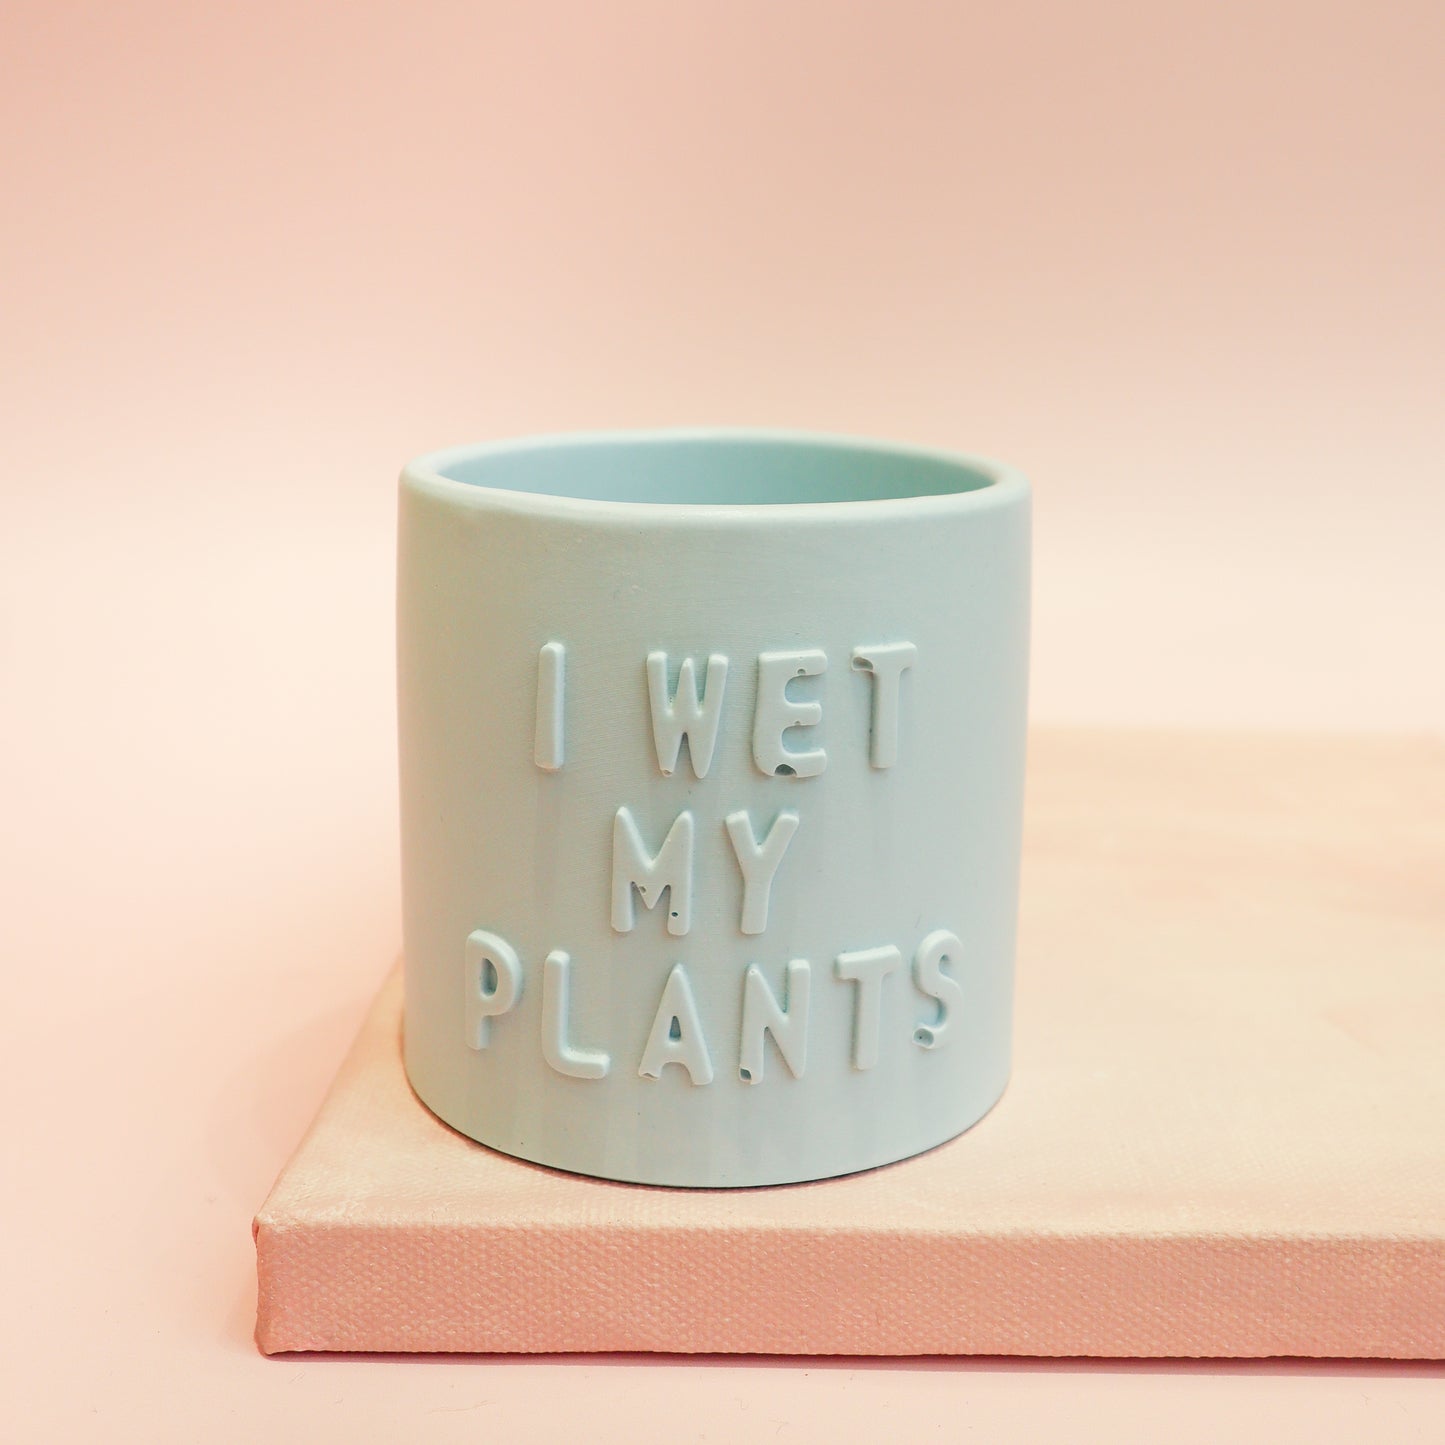 Posoda za rastline "I wet my plants - modra", M Design Home